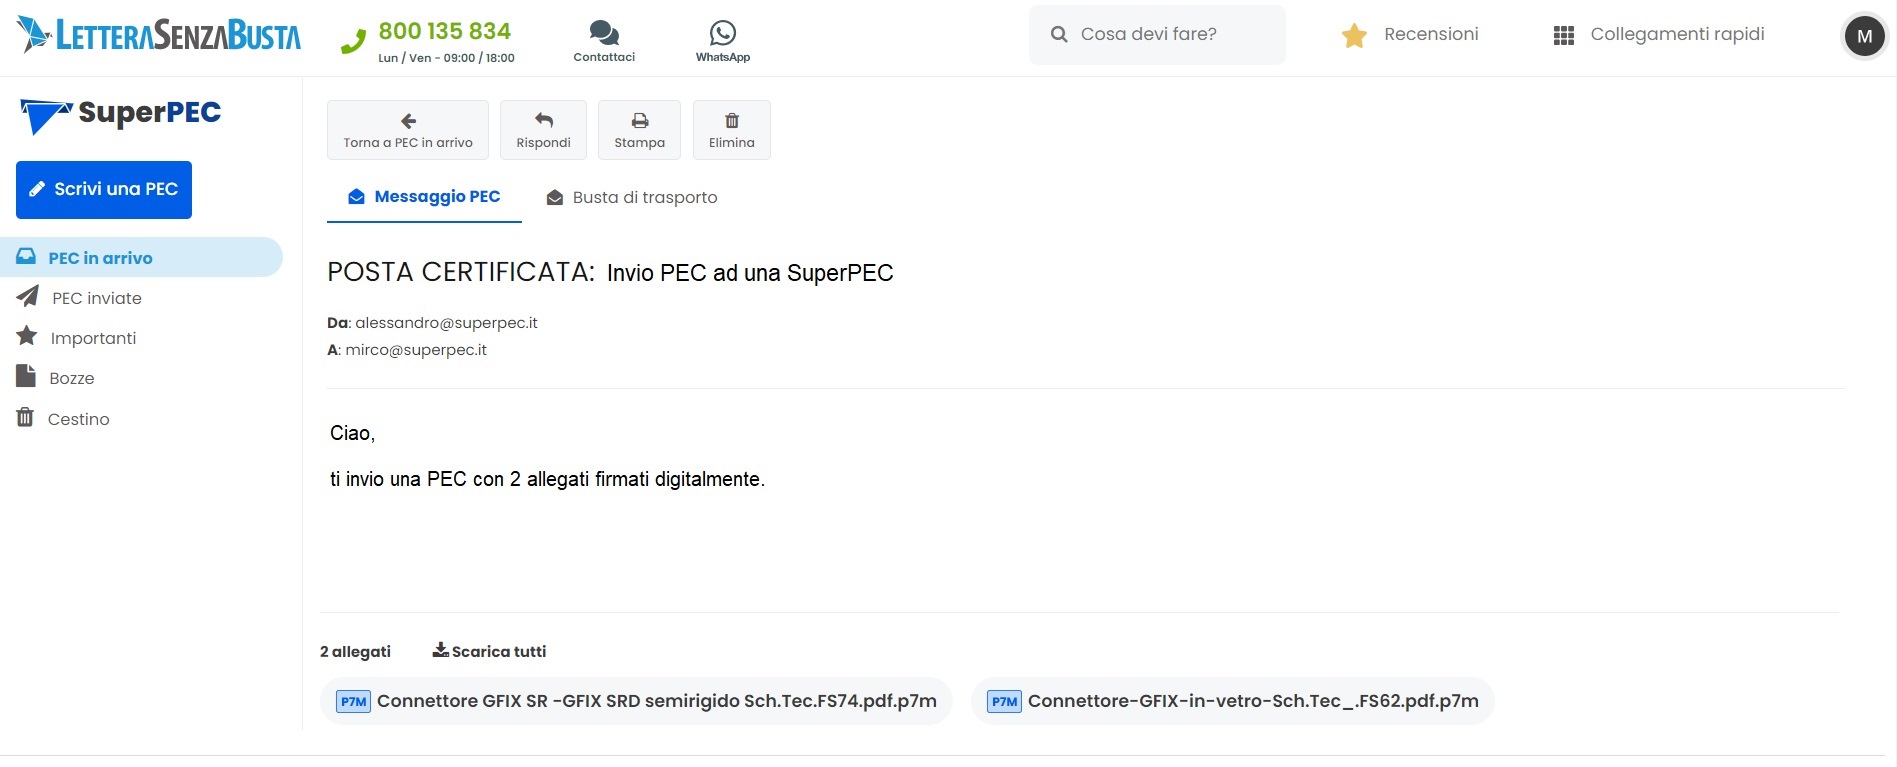 Webmail SuperPEC: messaggio PEC in arrivo